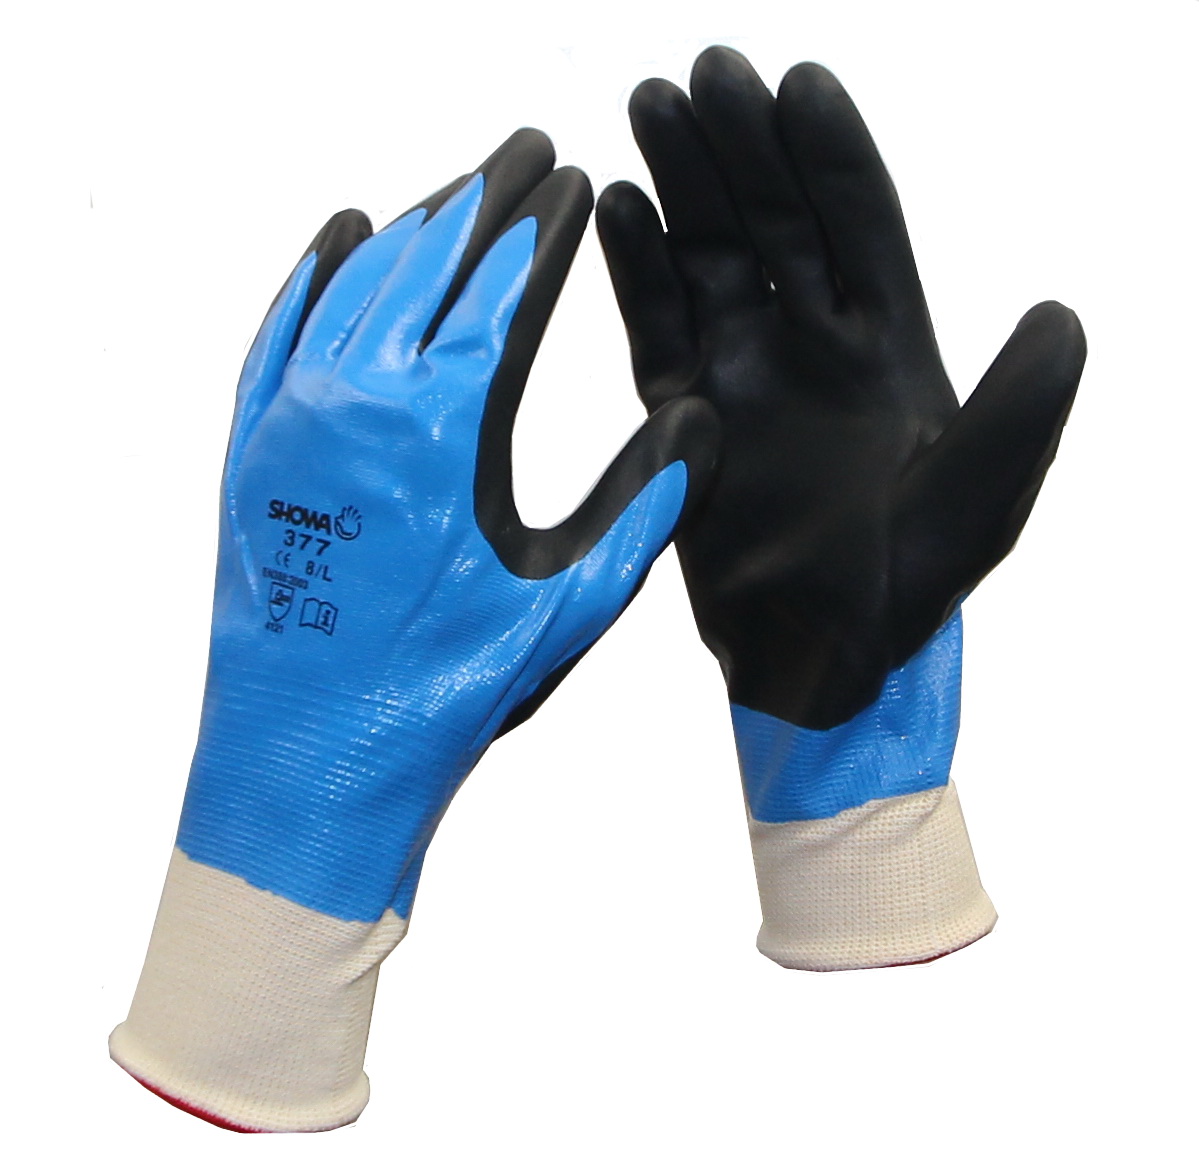 GÖRTE U. TIEDEMANN GMBH CO. KG - ALTENHO Handschuhe Nitrile Foam Grip 377 Gr. 9 vollständig getaucht in Tüte